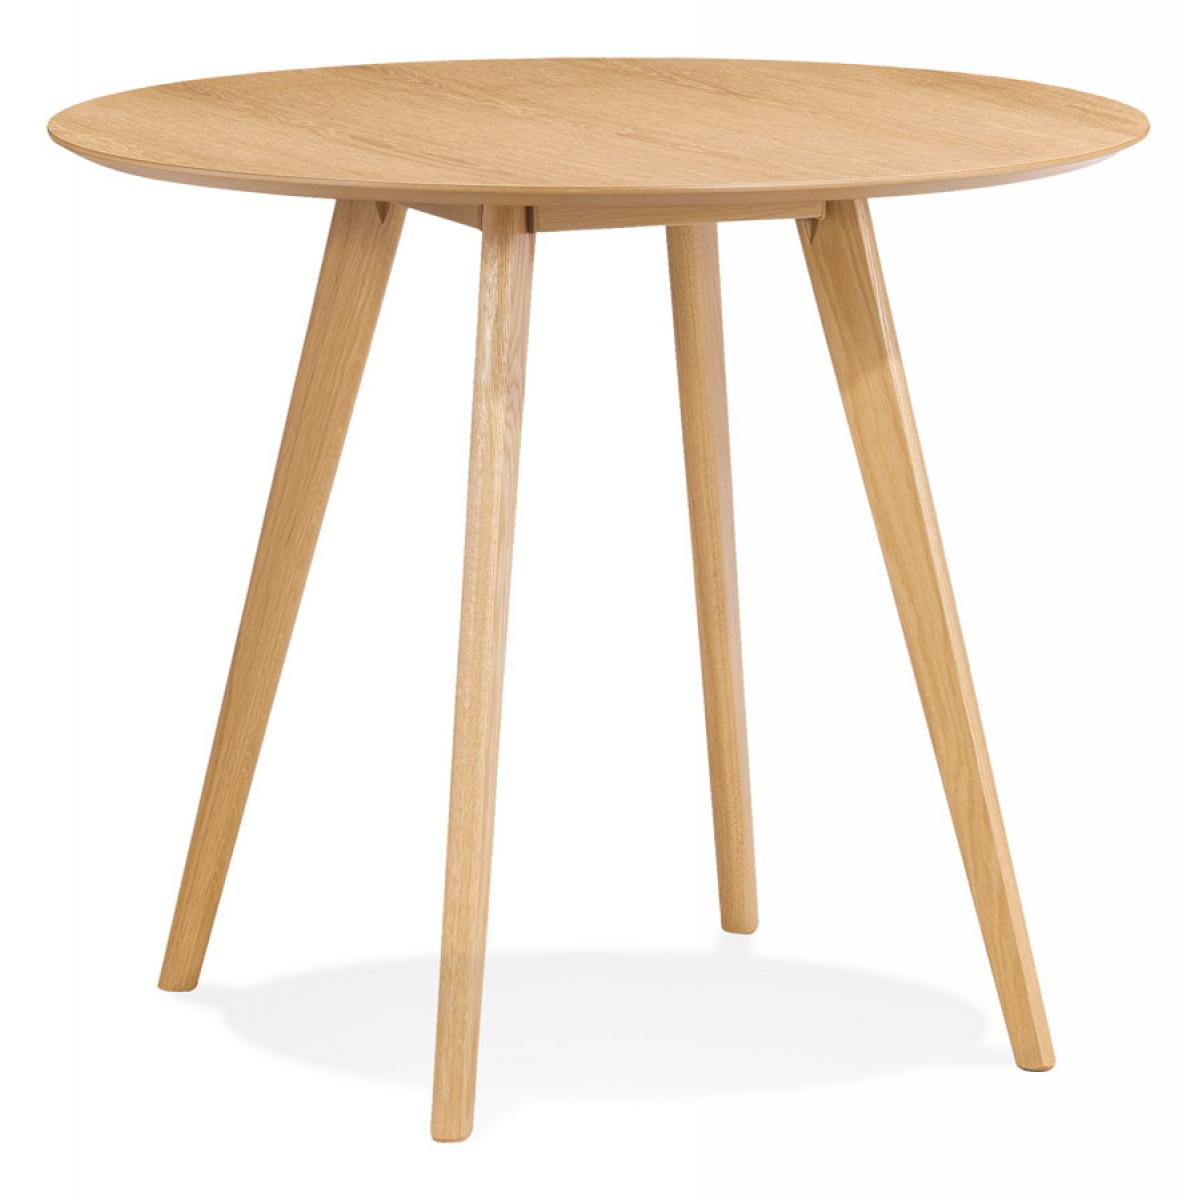 Alterego - Table de cuisine ronde 'MIDY' finition naturelle style scandinave - ø 90 cm - Tables à manger